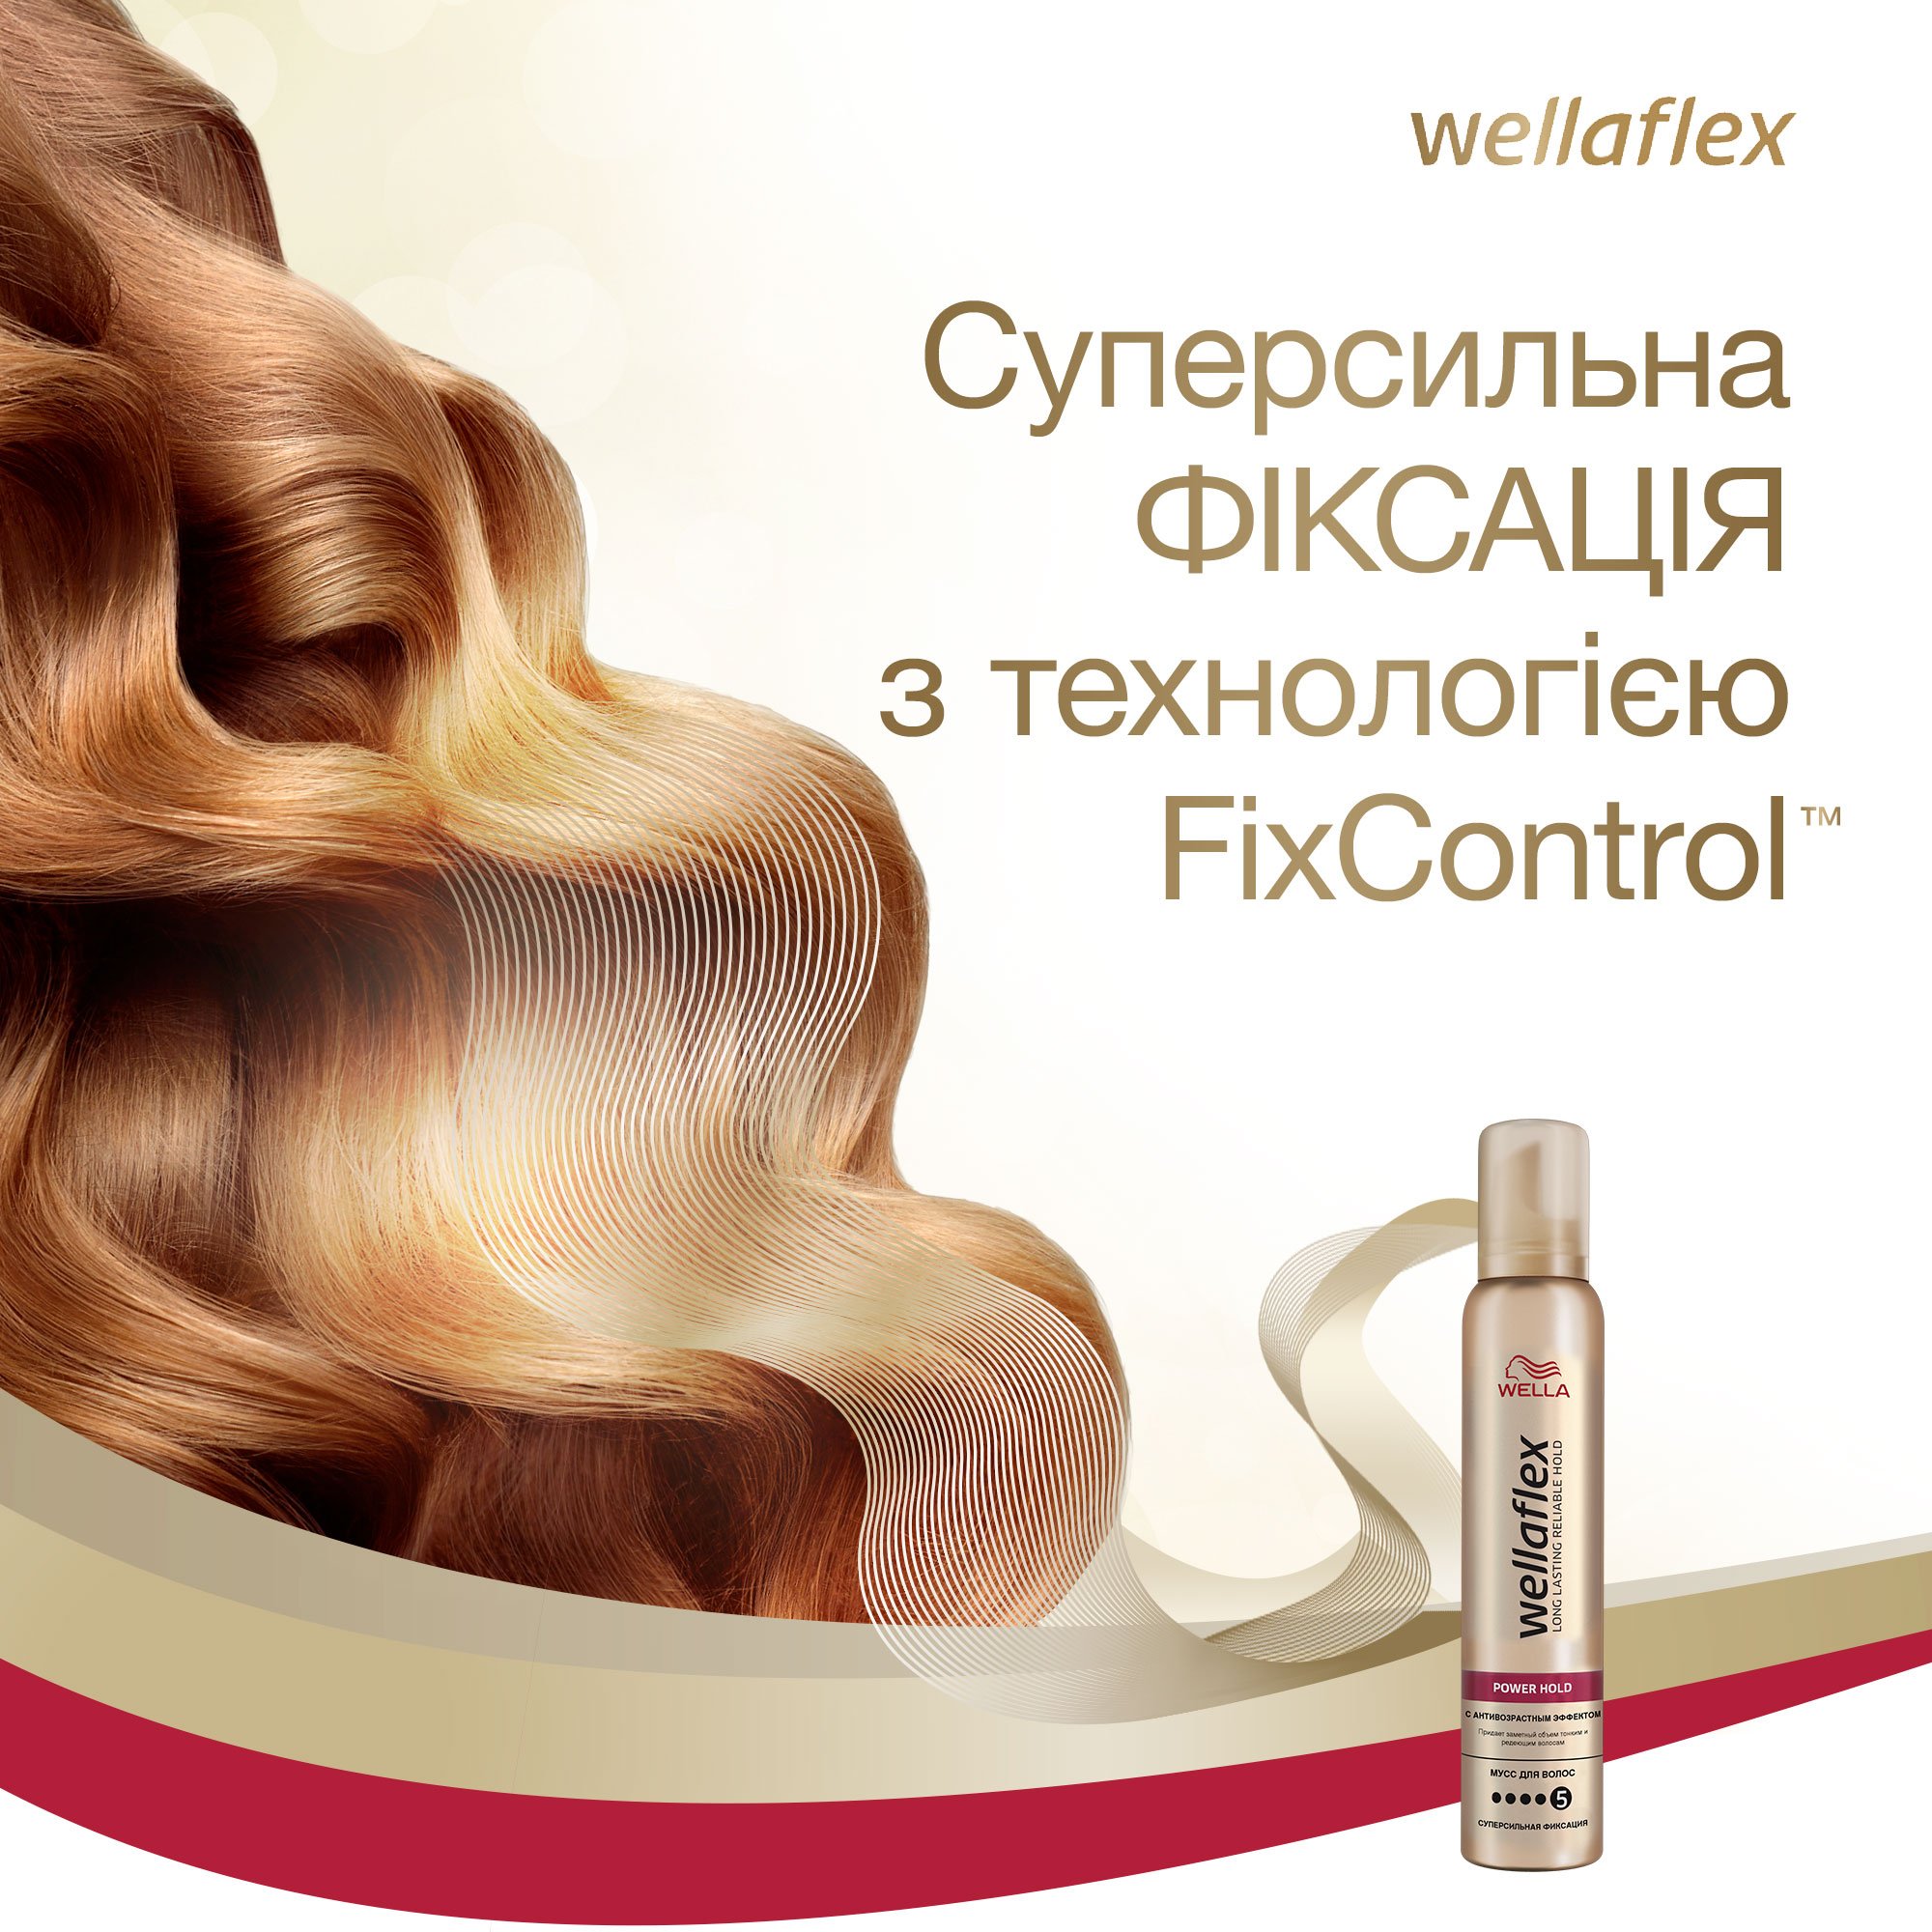 Мусс для волос Wellaflex с антивозрастным эффектом Суперсильной фиксации, 200 мл - фото 6